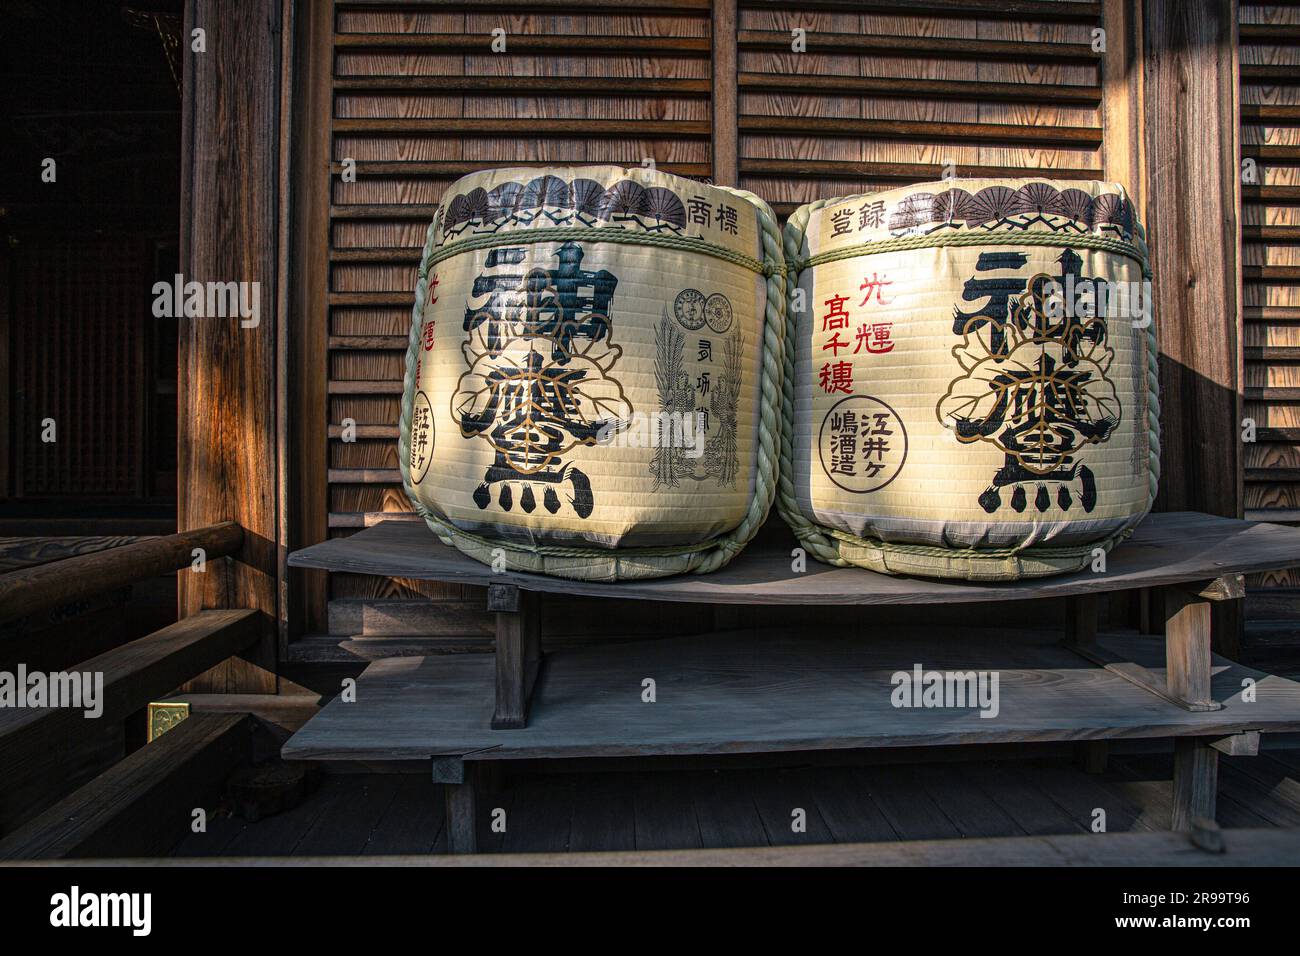 Herstellung japanischer Sake/ Strohmatte Fass Sake Fass am Shinto Schrein in Akashi, Hyogo Präfektur, Japan. Stockfoto